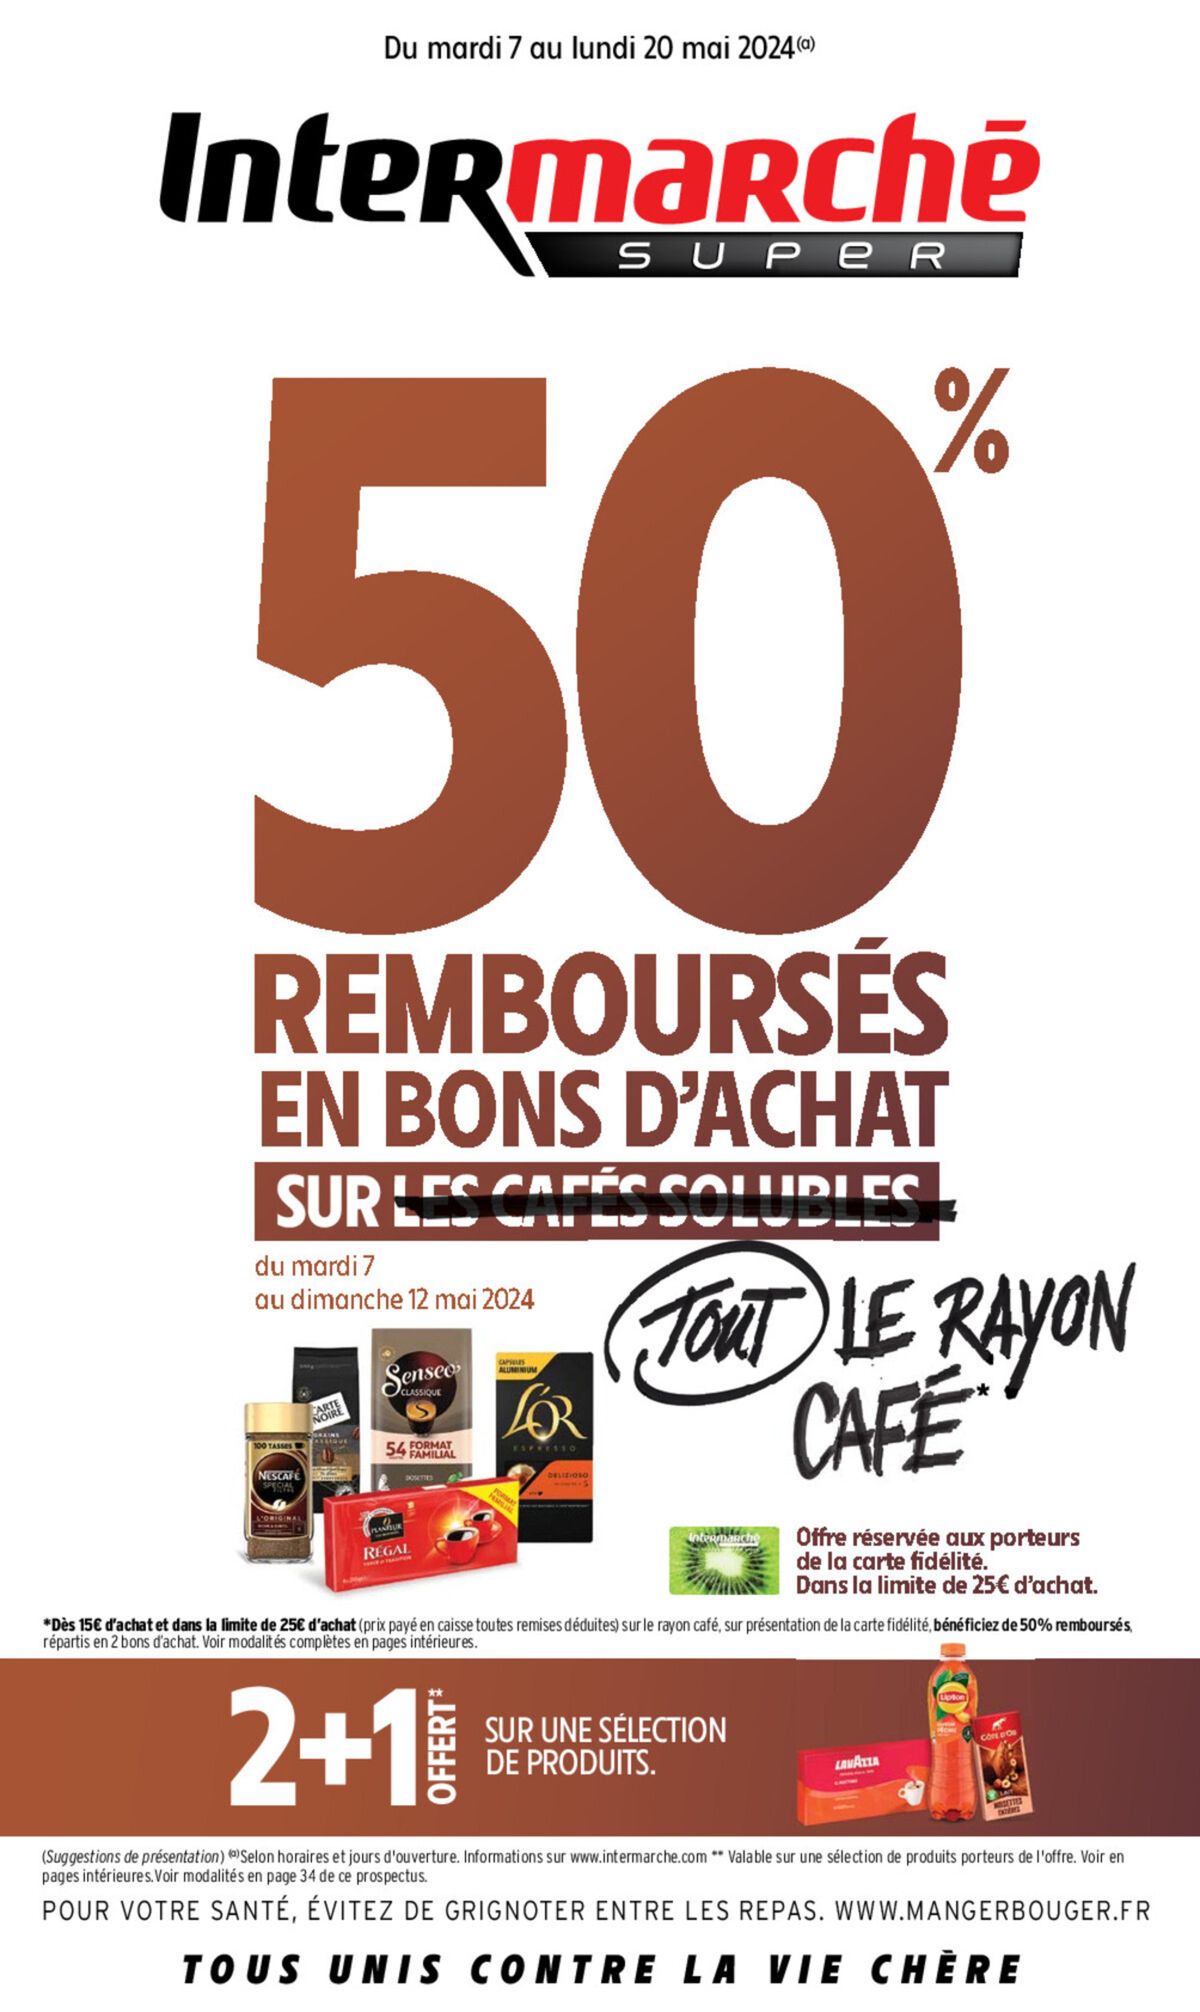 Catalogue 50% REMBOURSÉS EN BONS D'ACHAT, page 00001